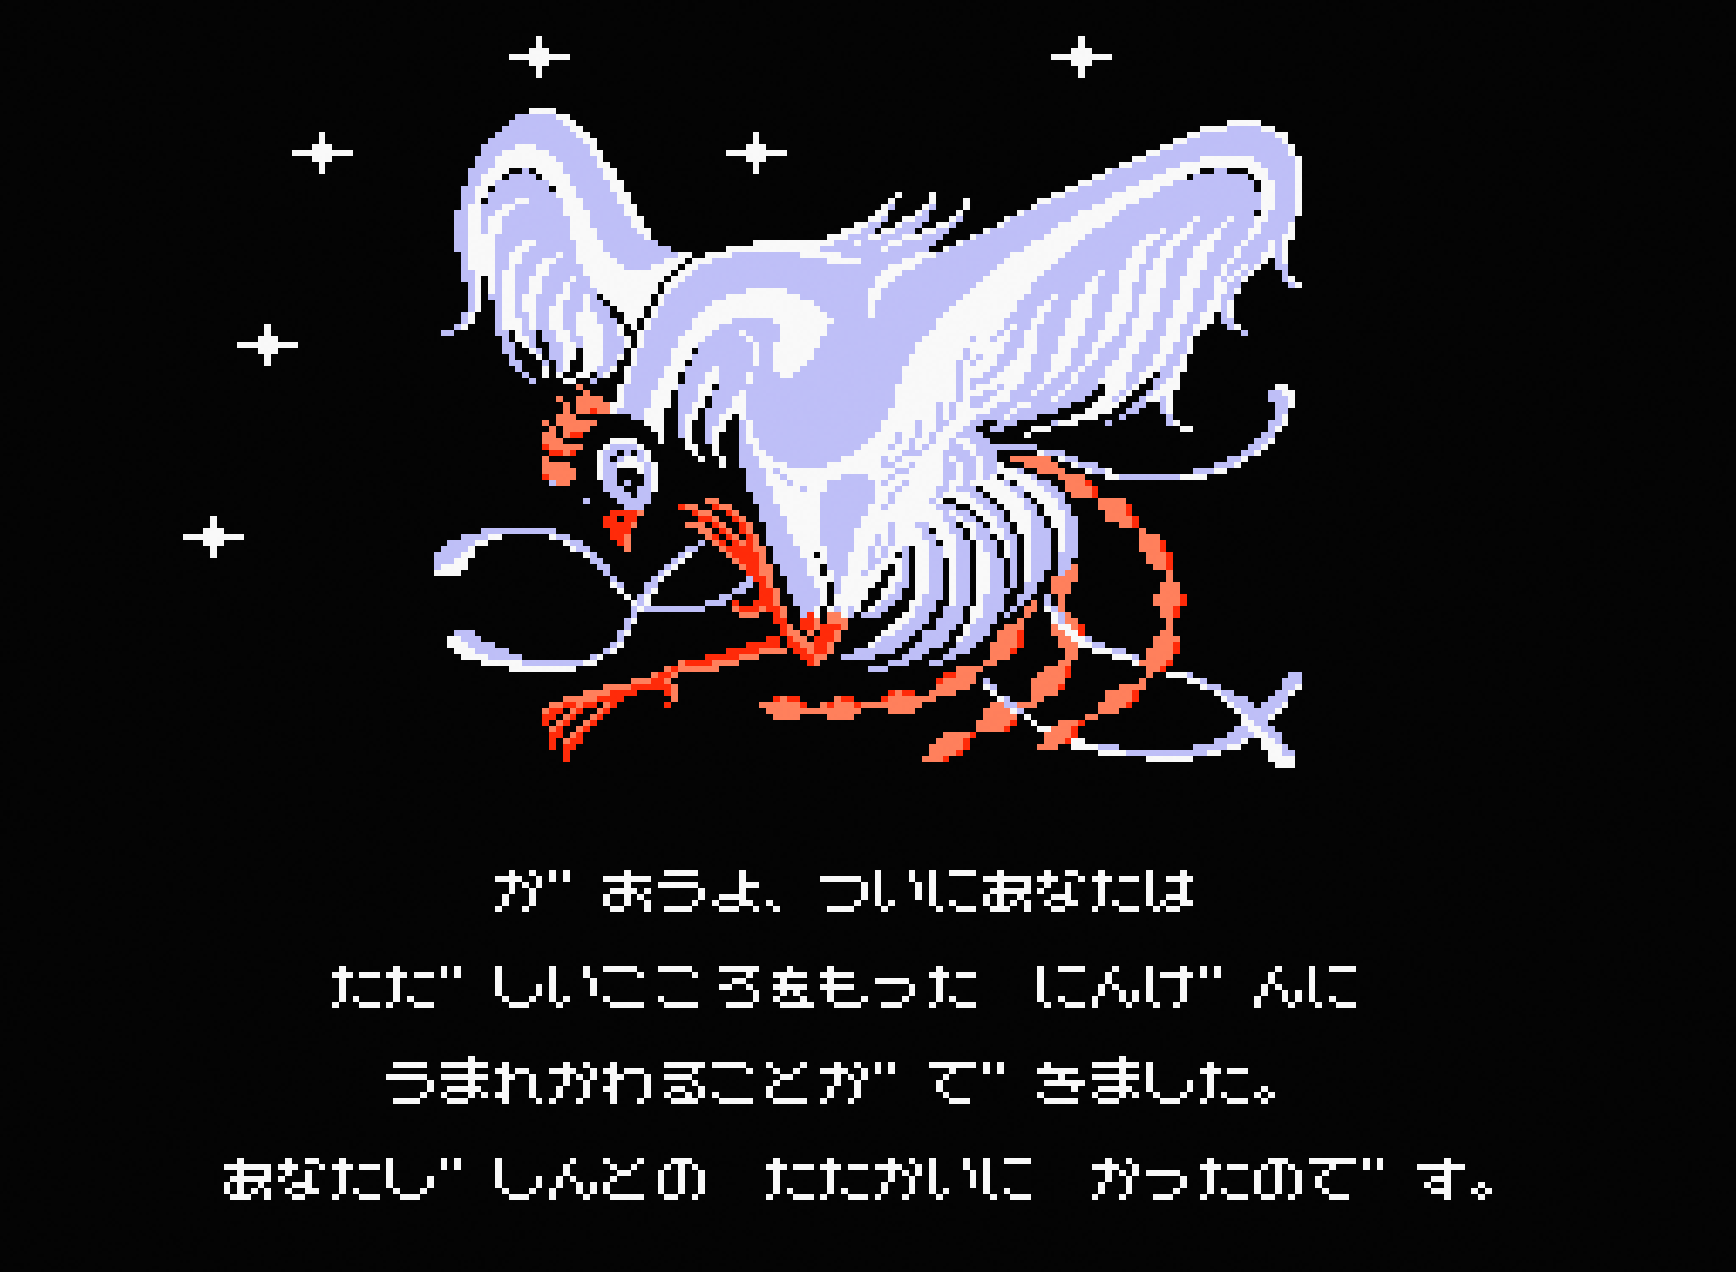 火の鳥 ⎯ 鳳凰編 ⎯ for MSX2